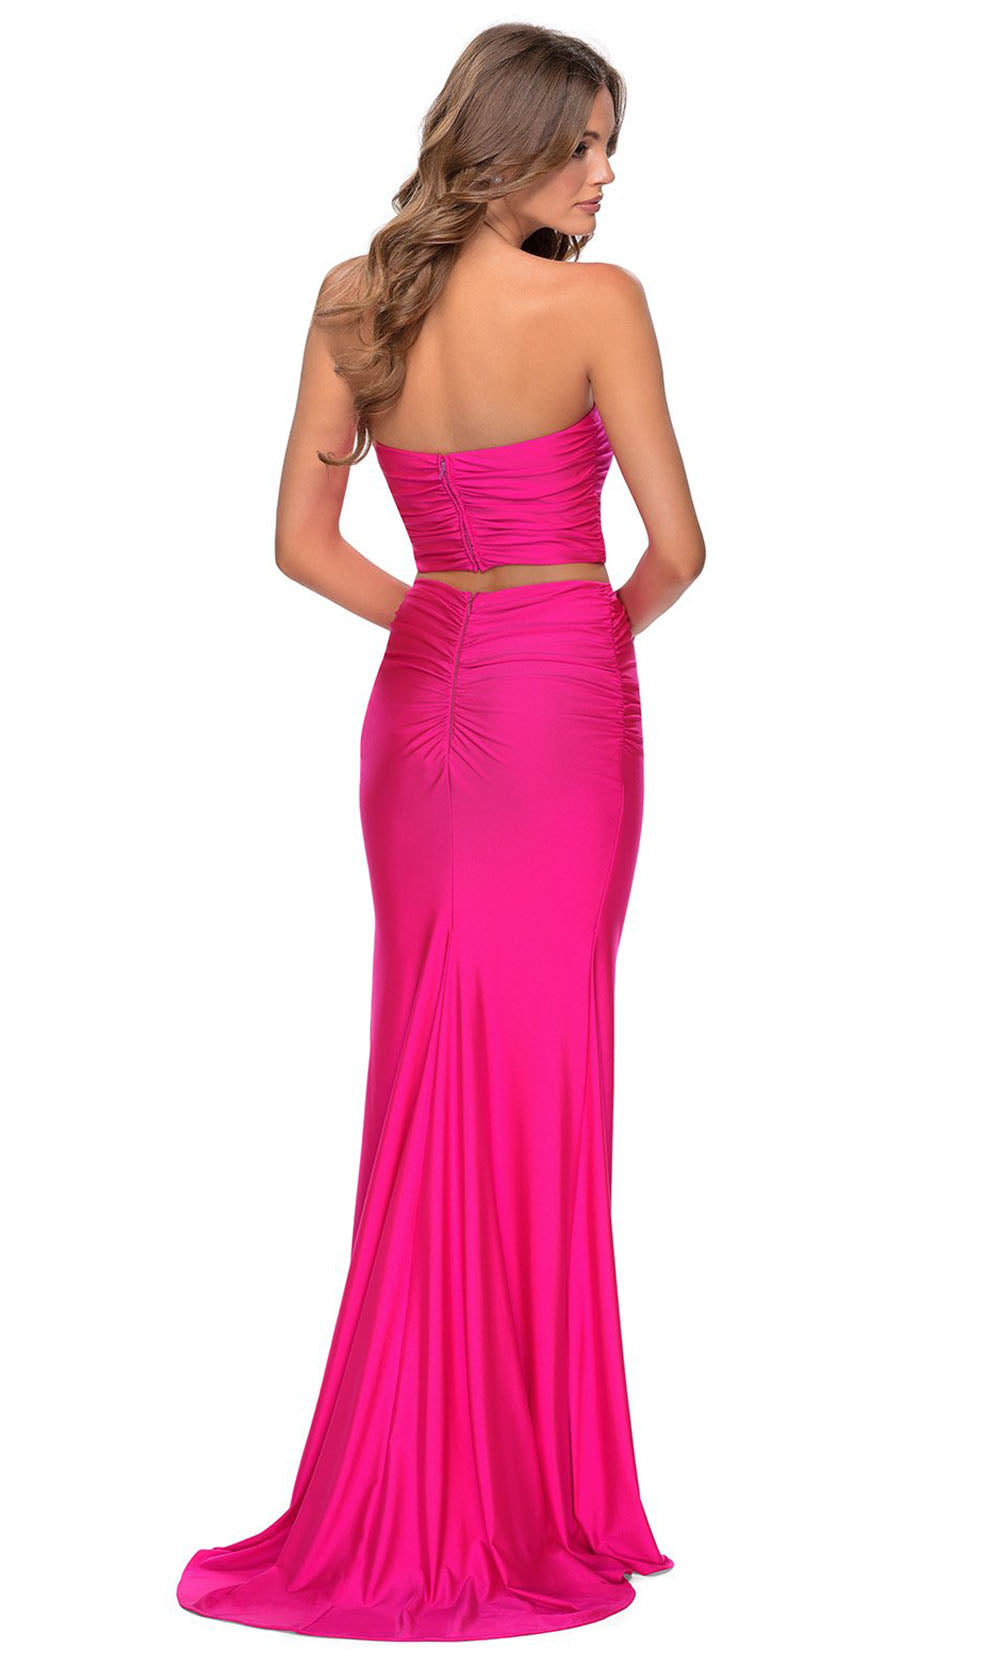 La Femme - 28972 Two-Piece Long Sheath Dress In Pink